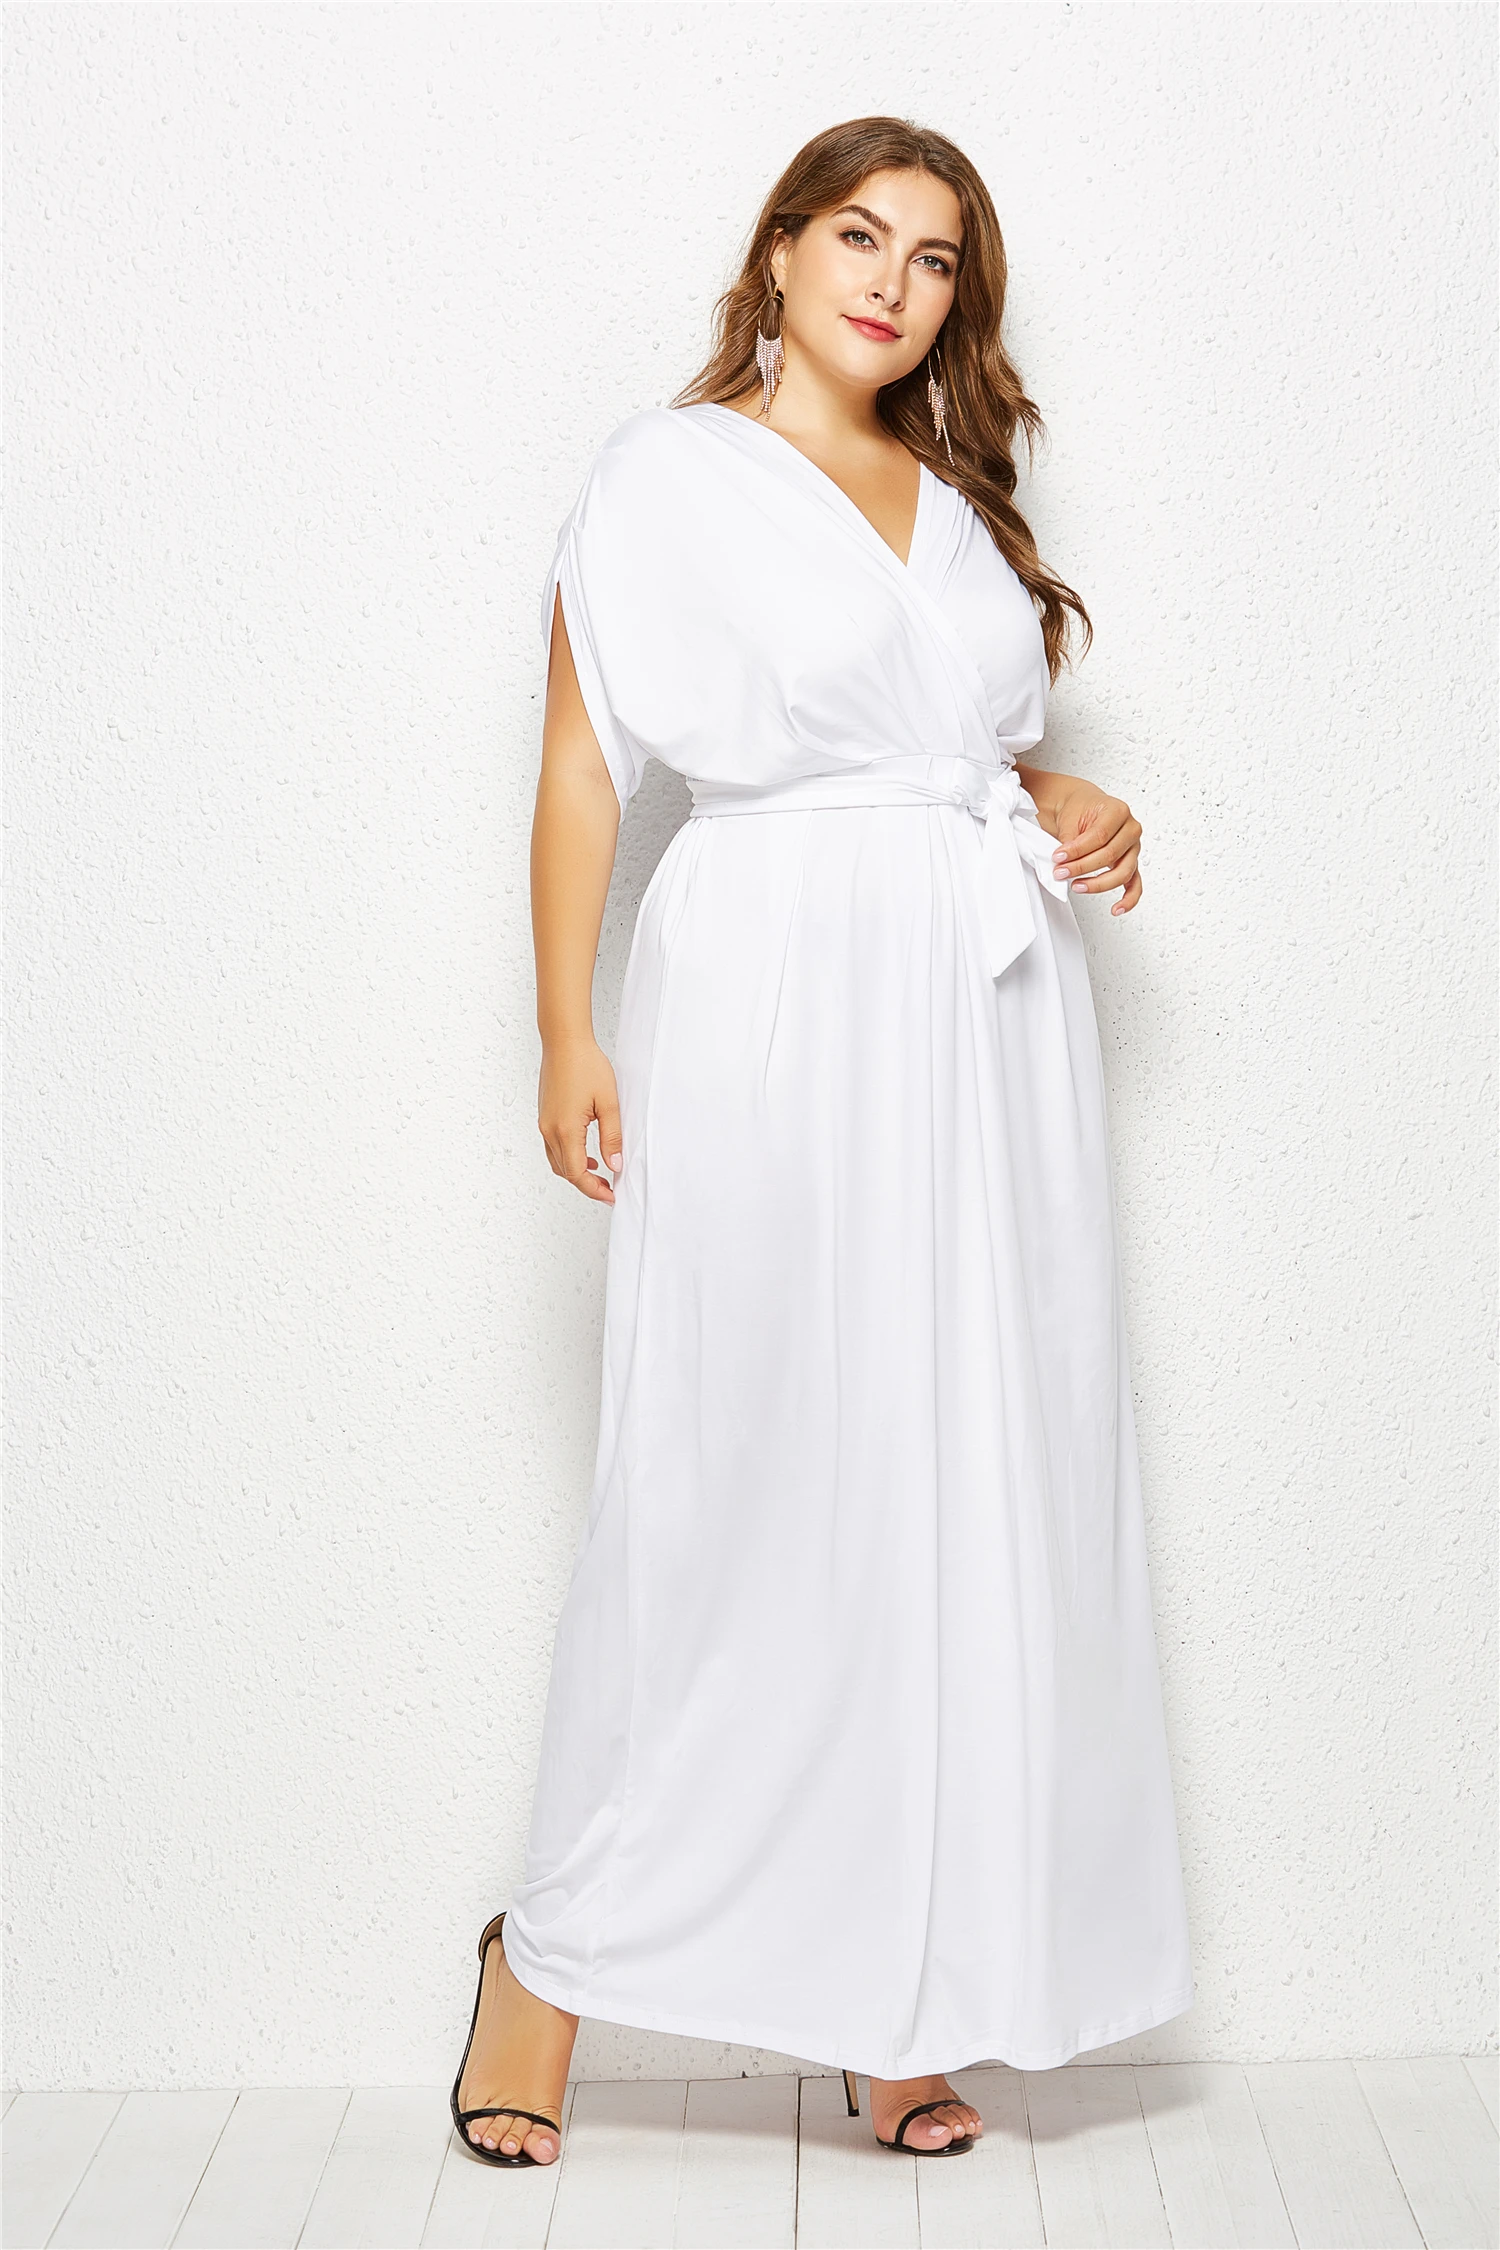 Женское вечернее платье размера плюс, v-образный вырез, свободное, синее, длина в пол, для особых случаев, макси платье, на каждый день, Vestido eDressU LMT-FP3004